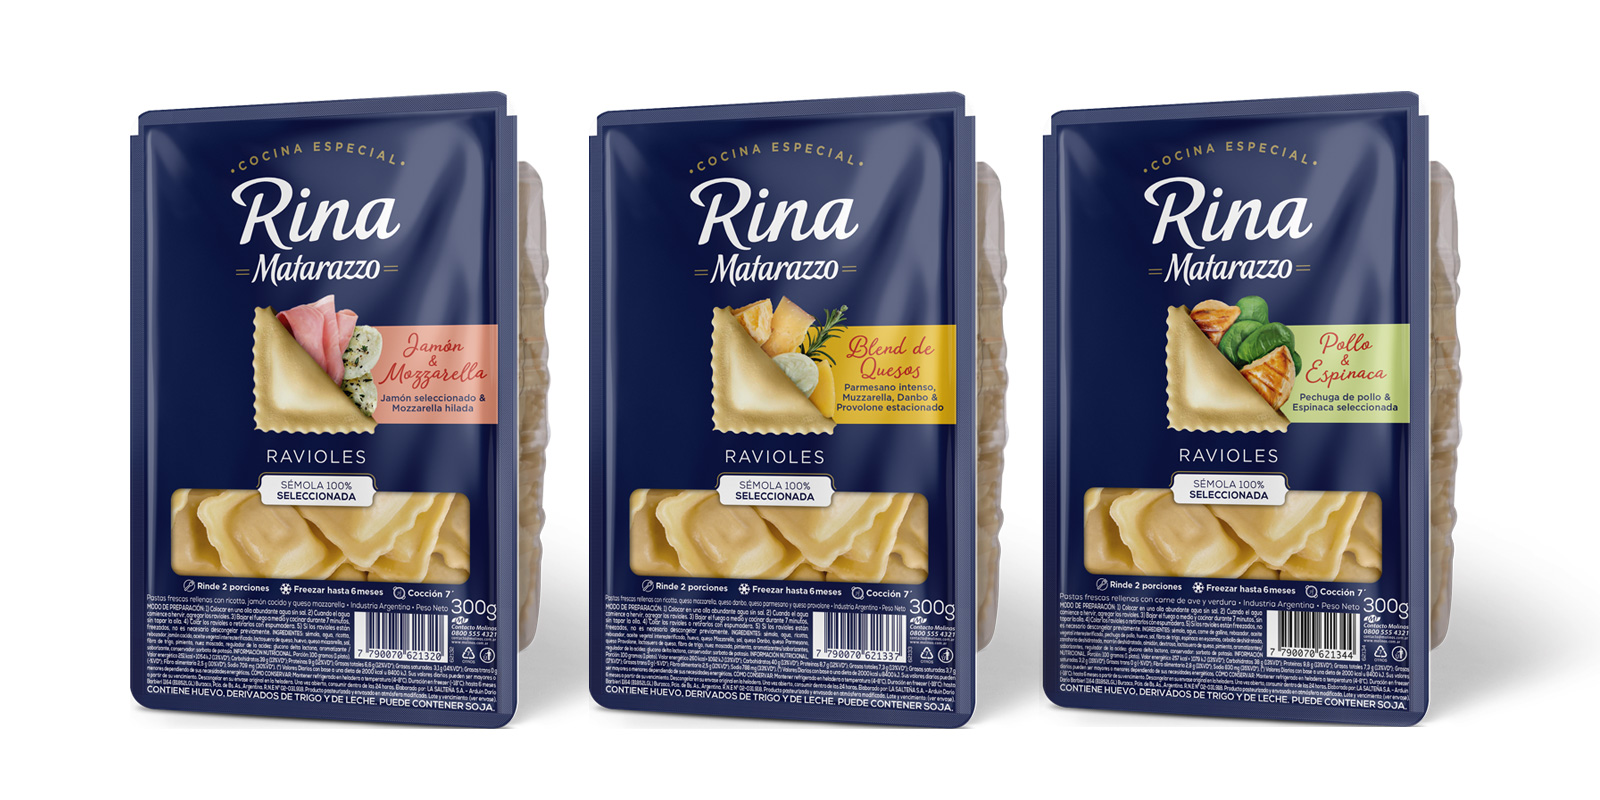 Rina Matarazzo diseño de packaging pastas frescas